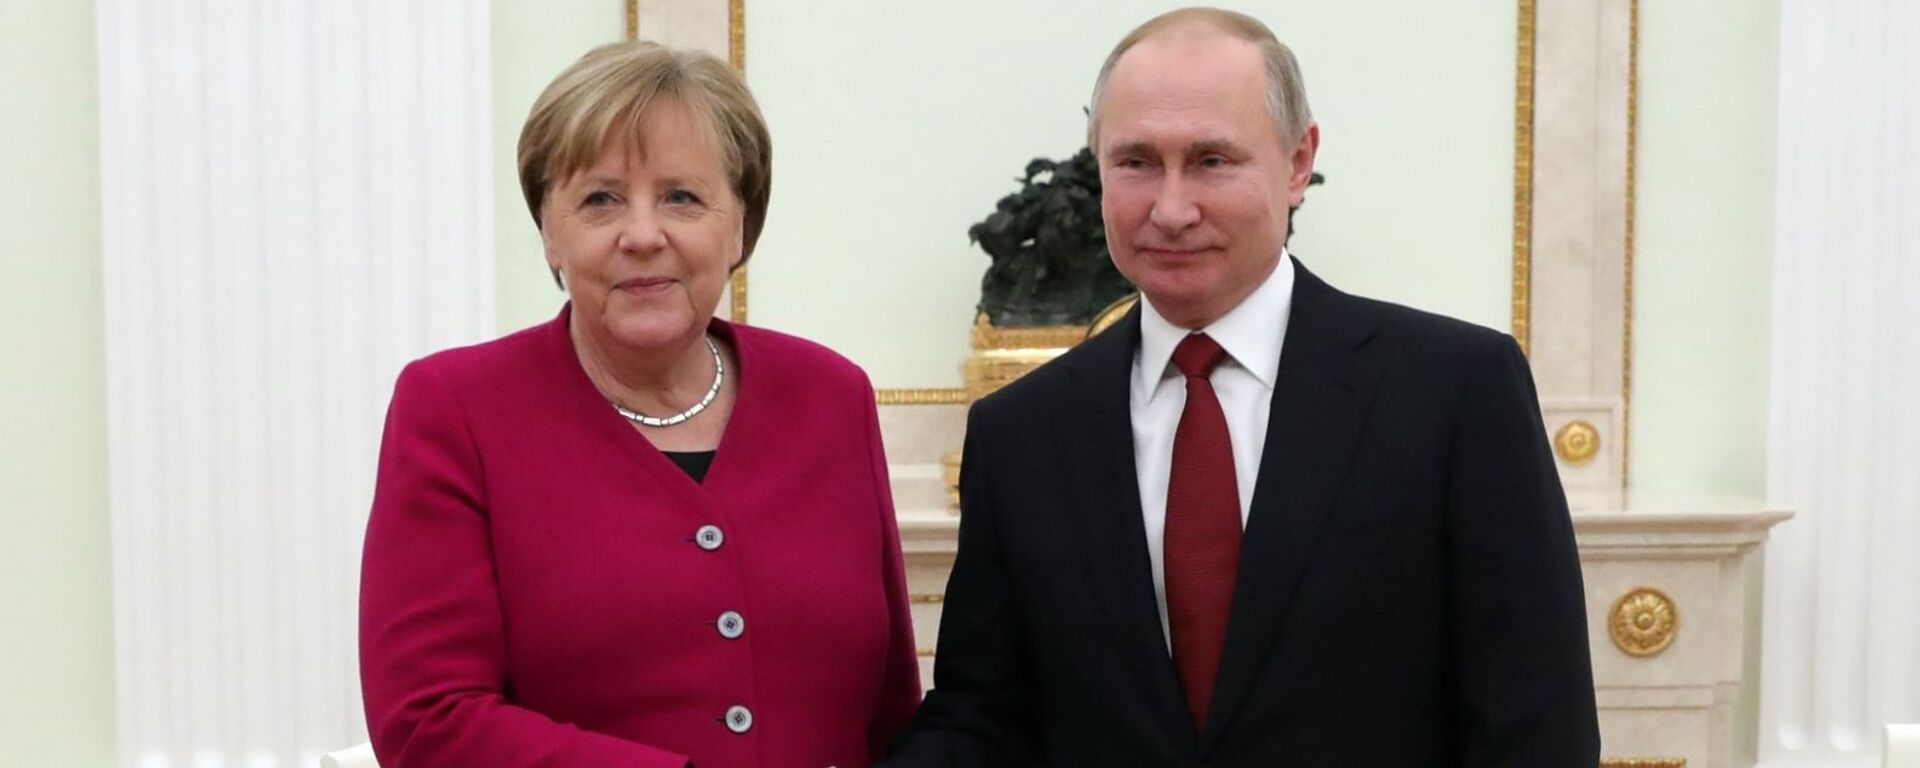 Встреча президента РФ В. Путина с канцлером Германии А. Меркель - Sputnik Latvija, 1920, 03.07.2021